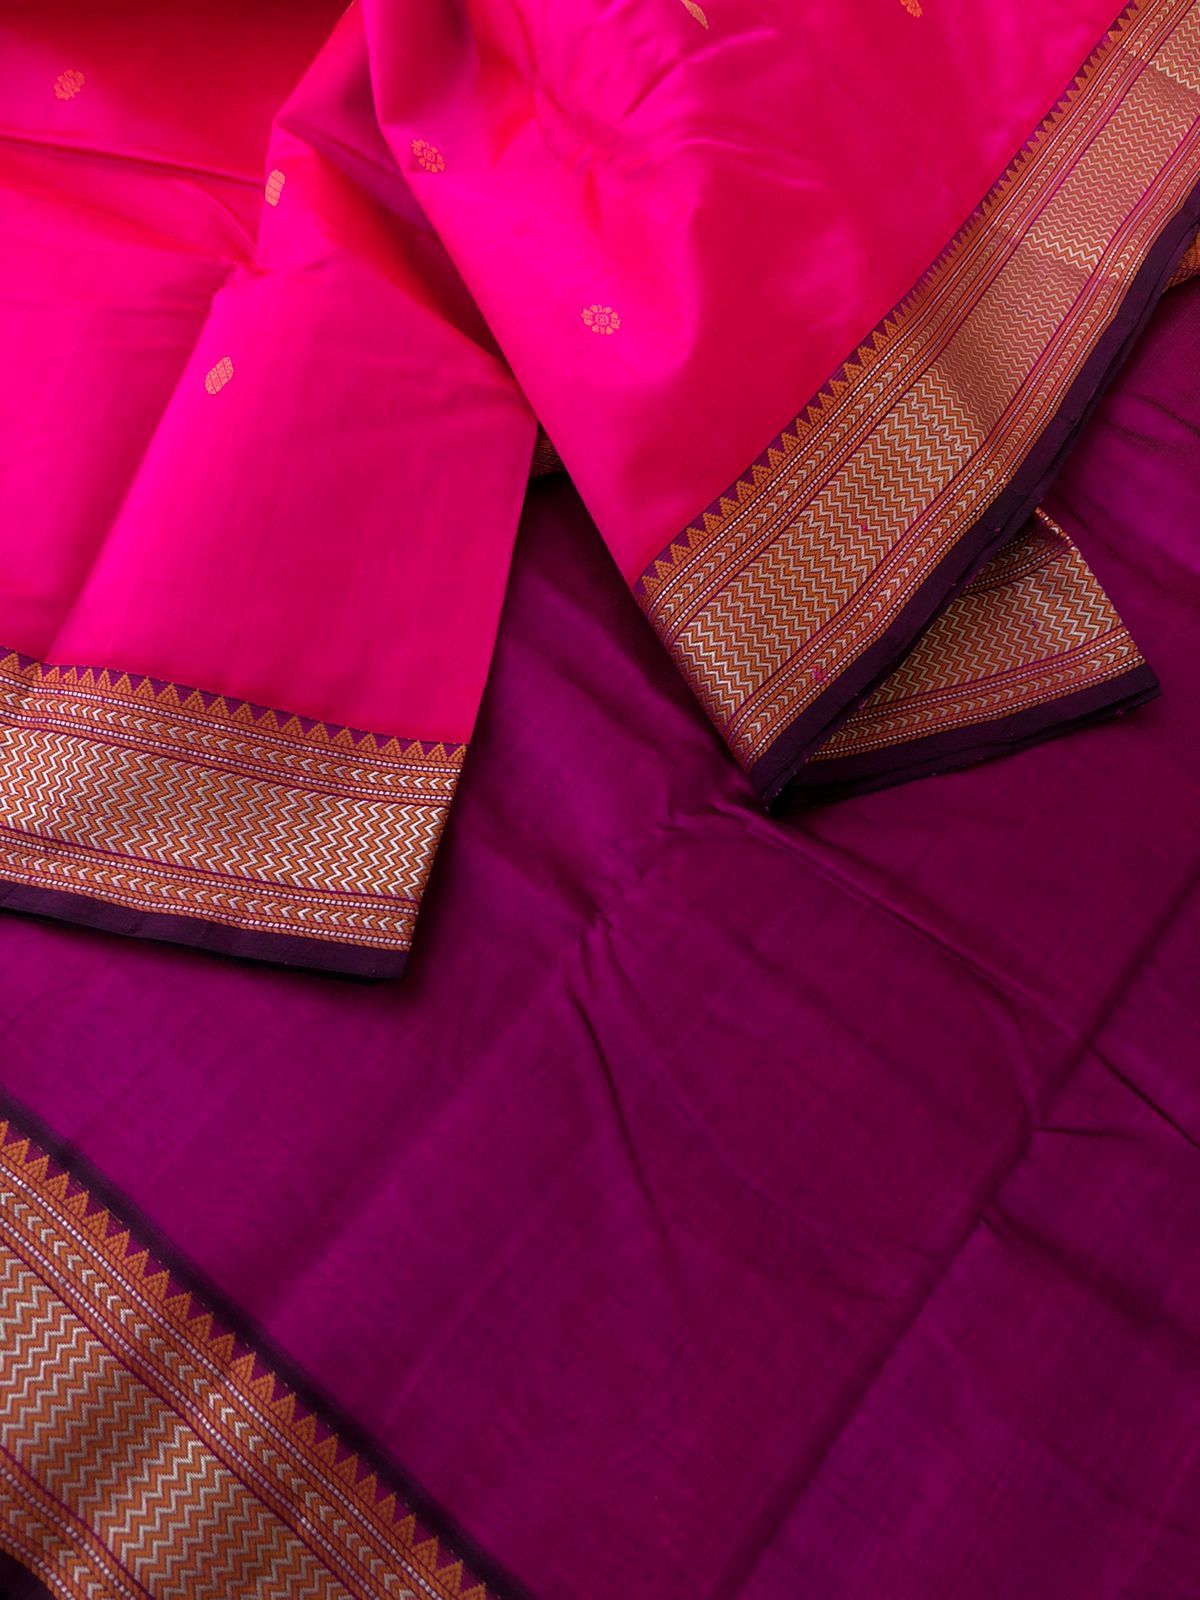 Woven Motifs Silk Cotton - beautiful Indian pink and purple